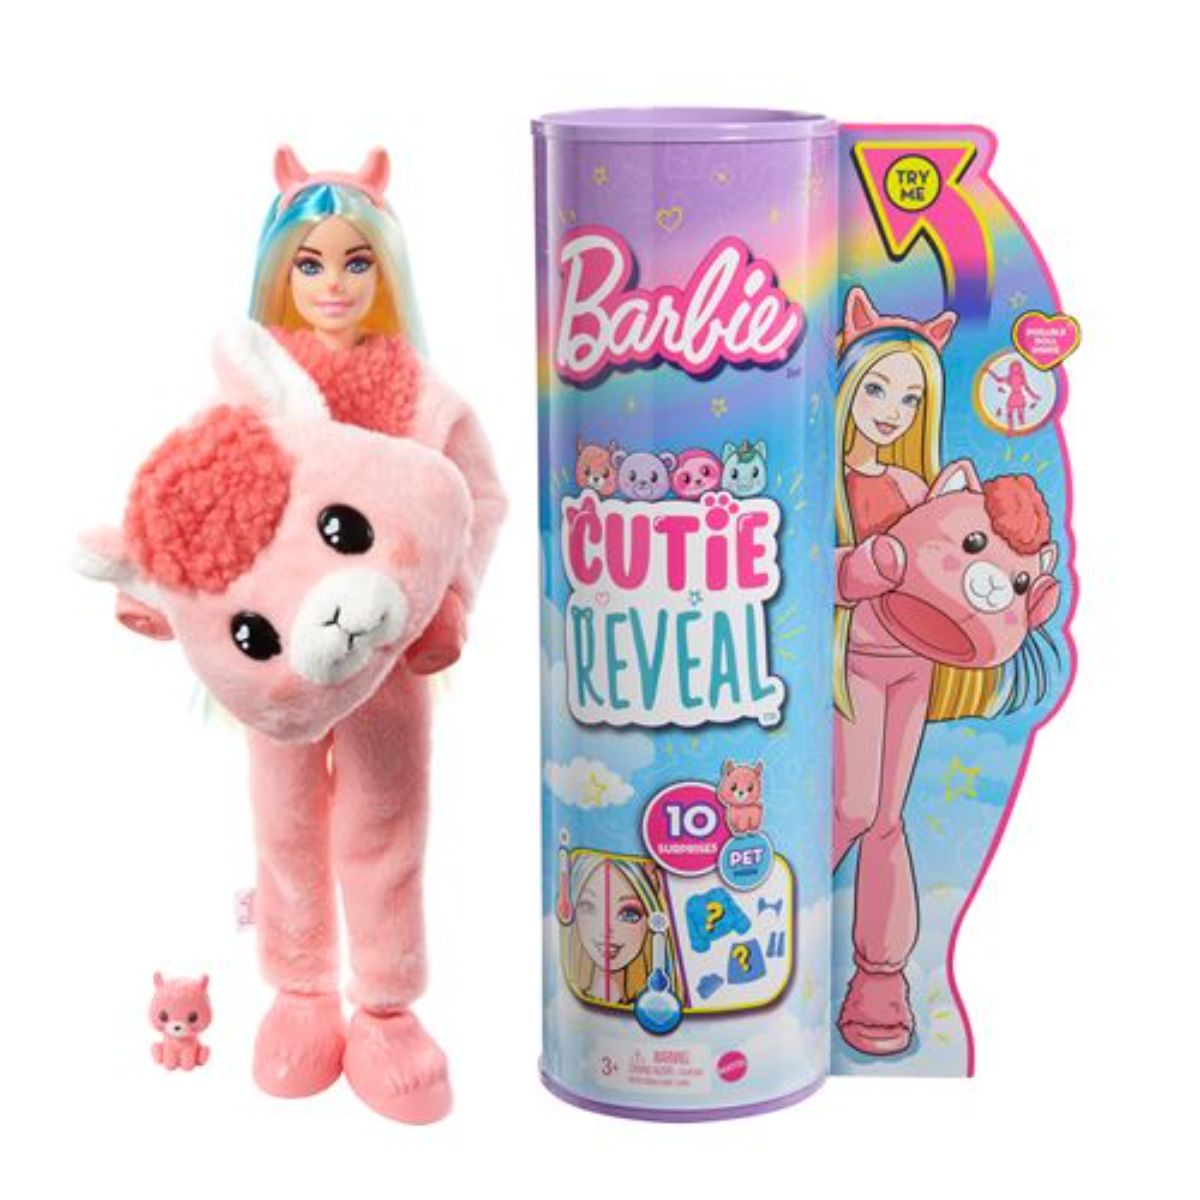 Papusa Barbie Cutie Reveal, Lama, cu 10 surprize Barbie imagine noua responsabilitatesociala.ro